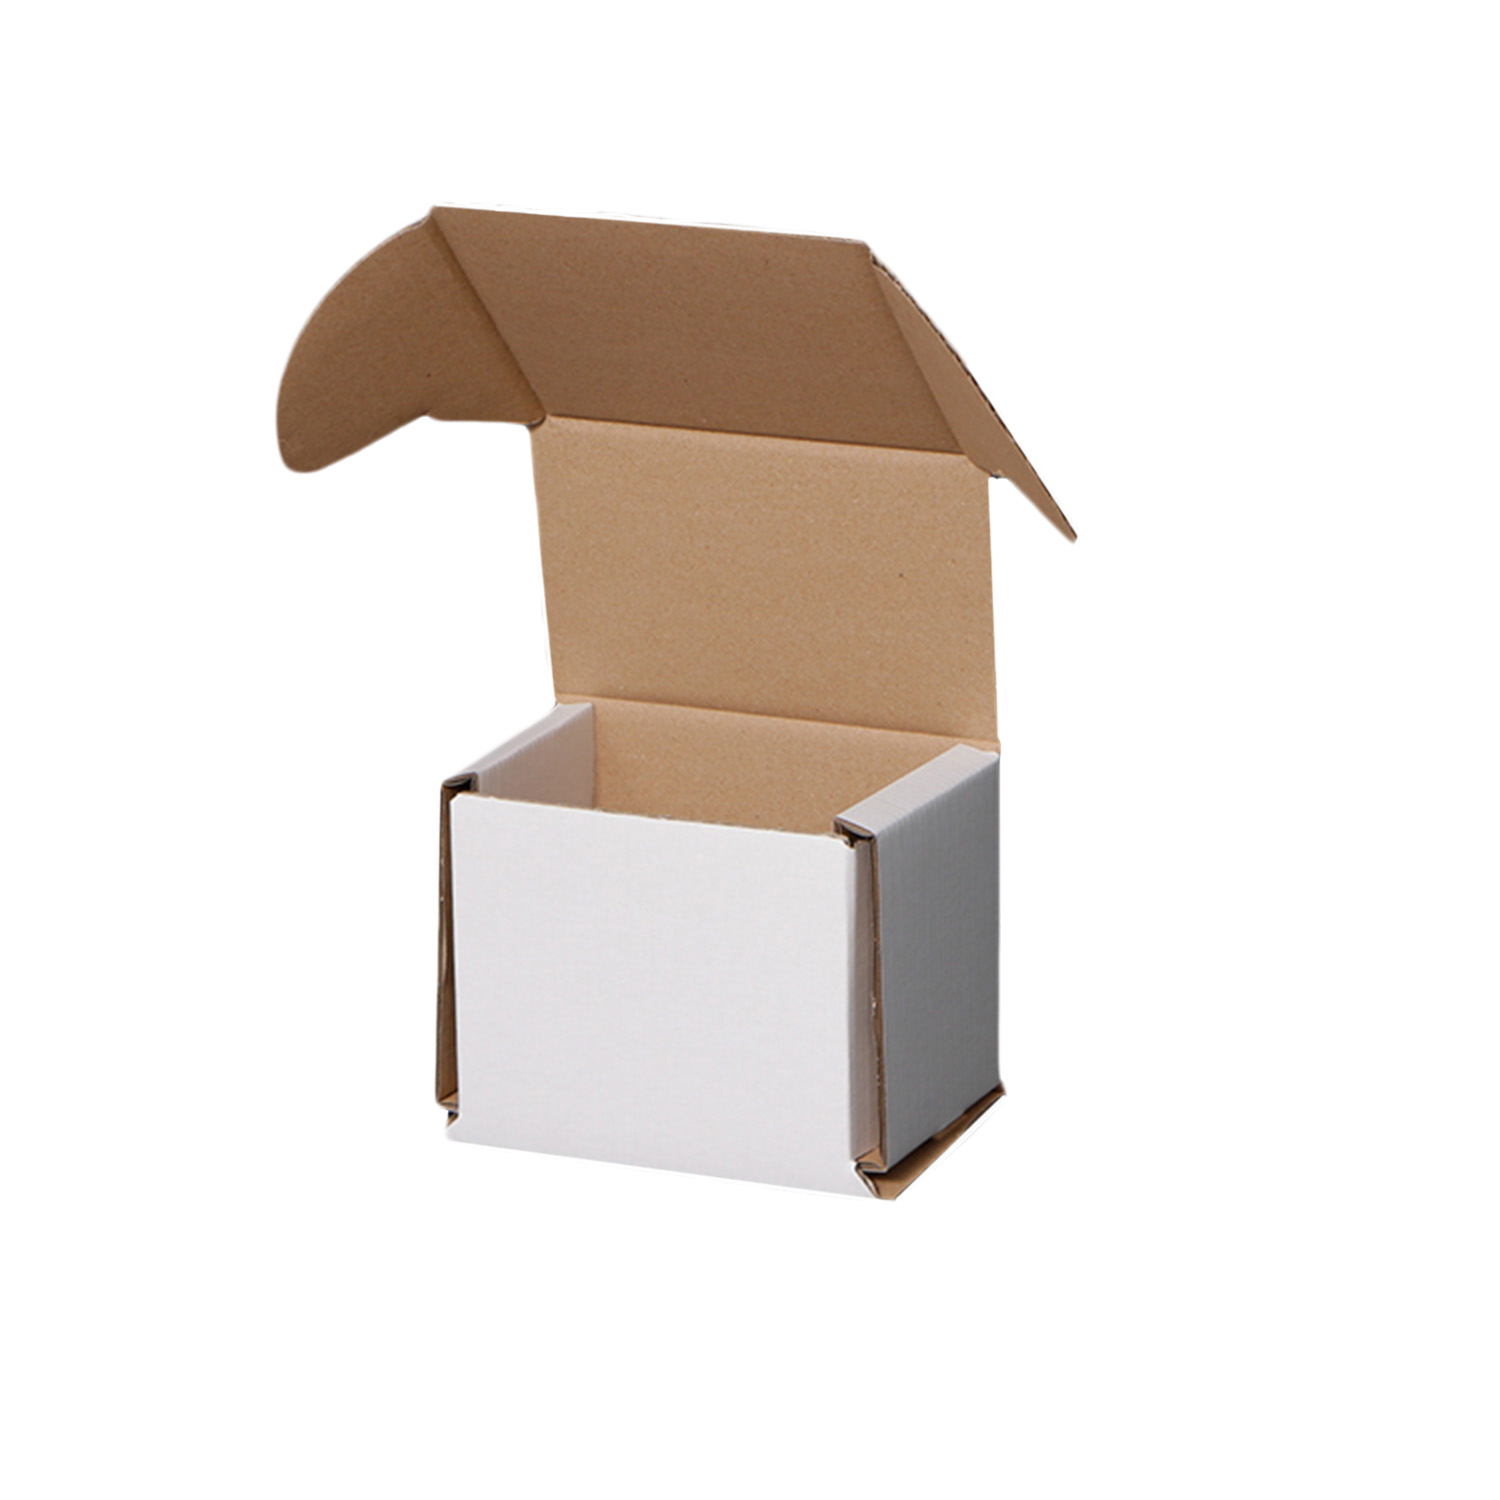 Cardboard Hamper Boxes Shop Deals, Save 69% | jlcatj.gob.mx